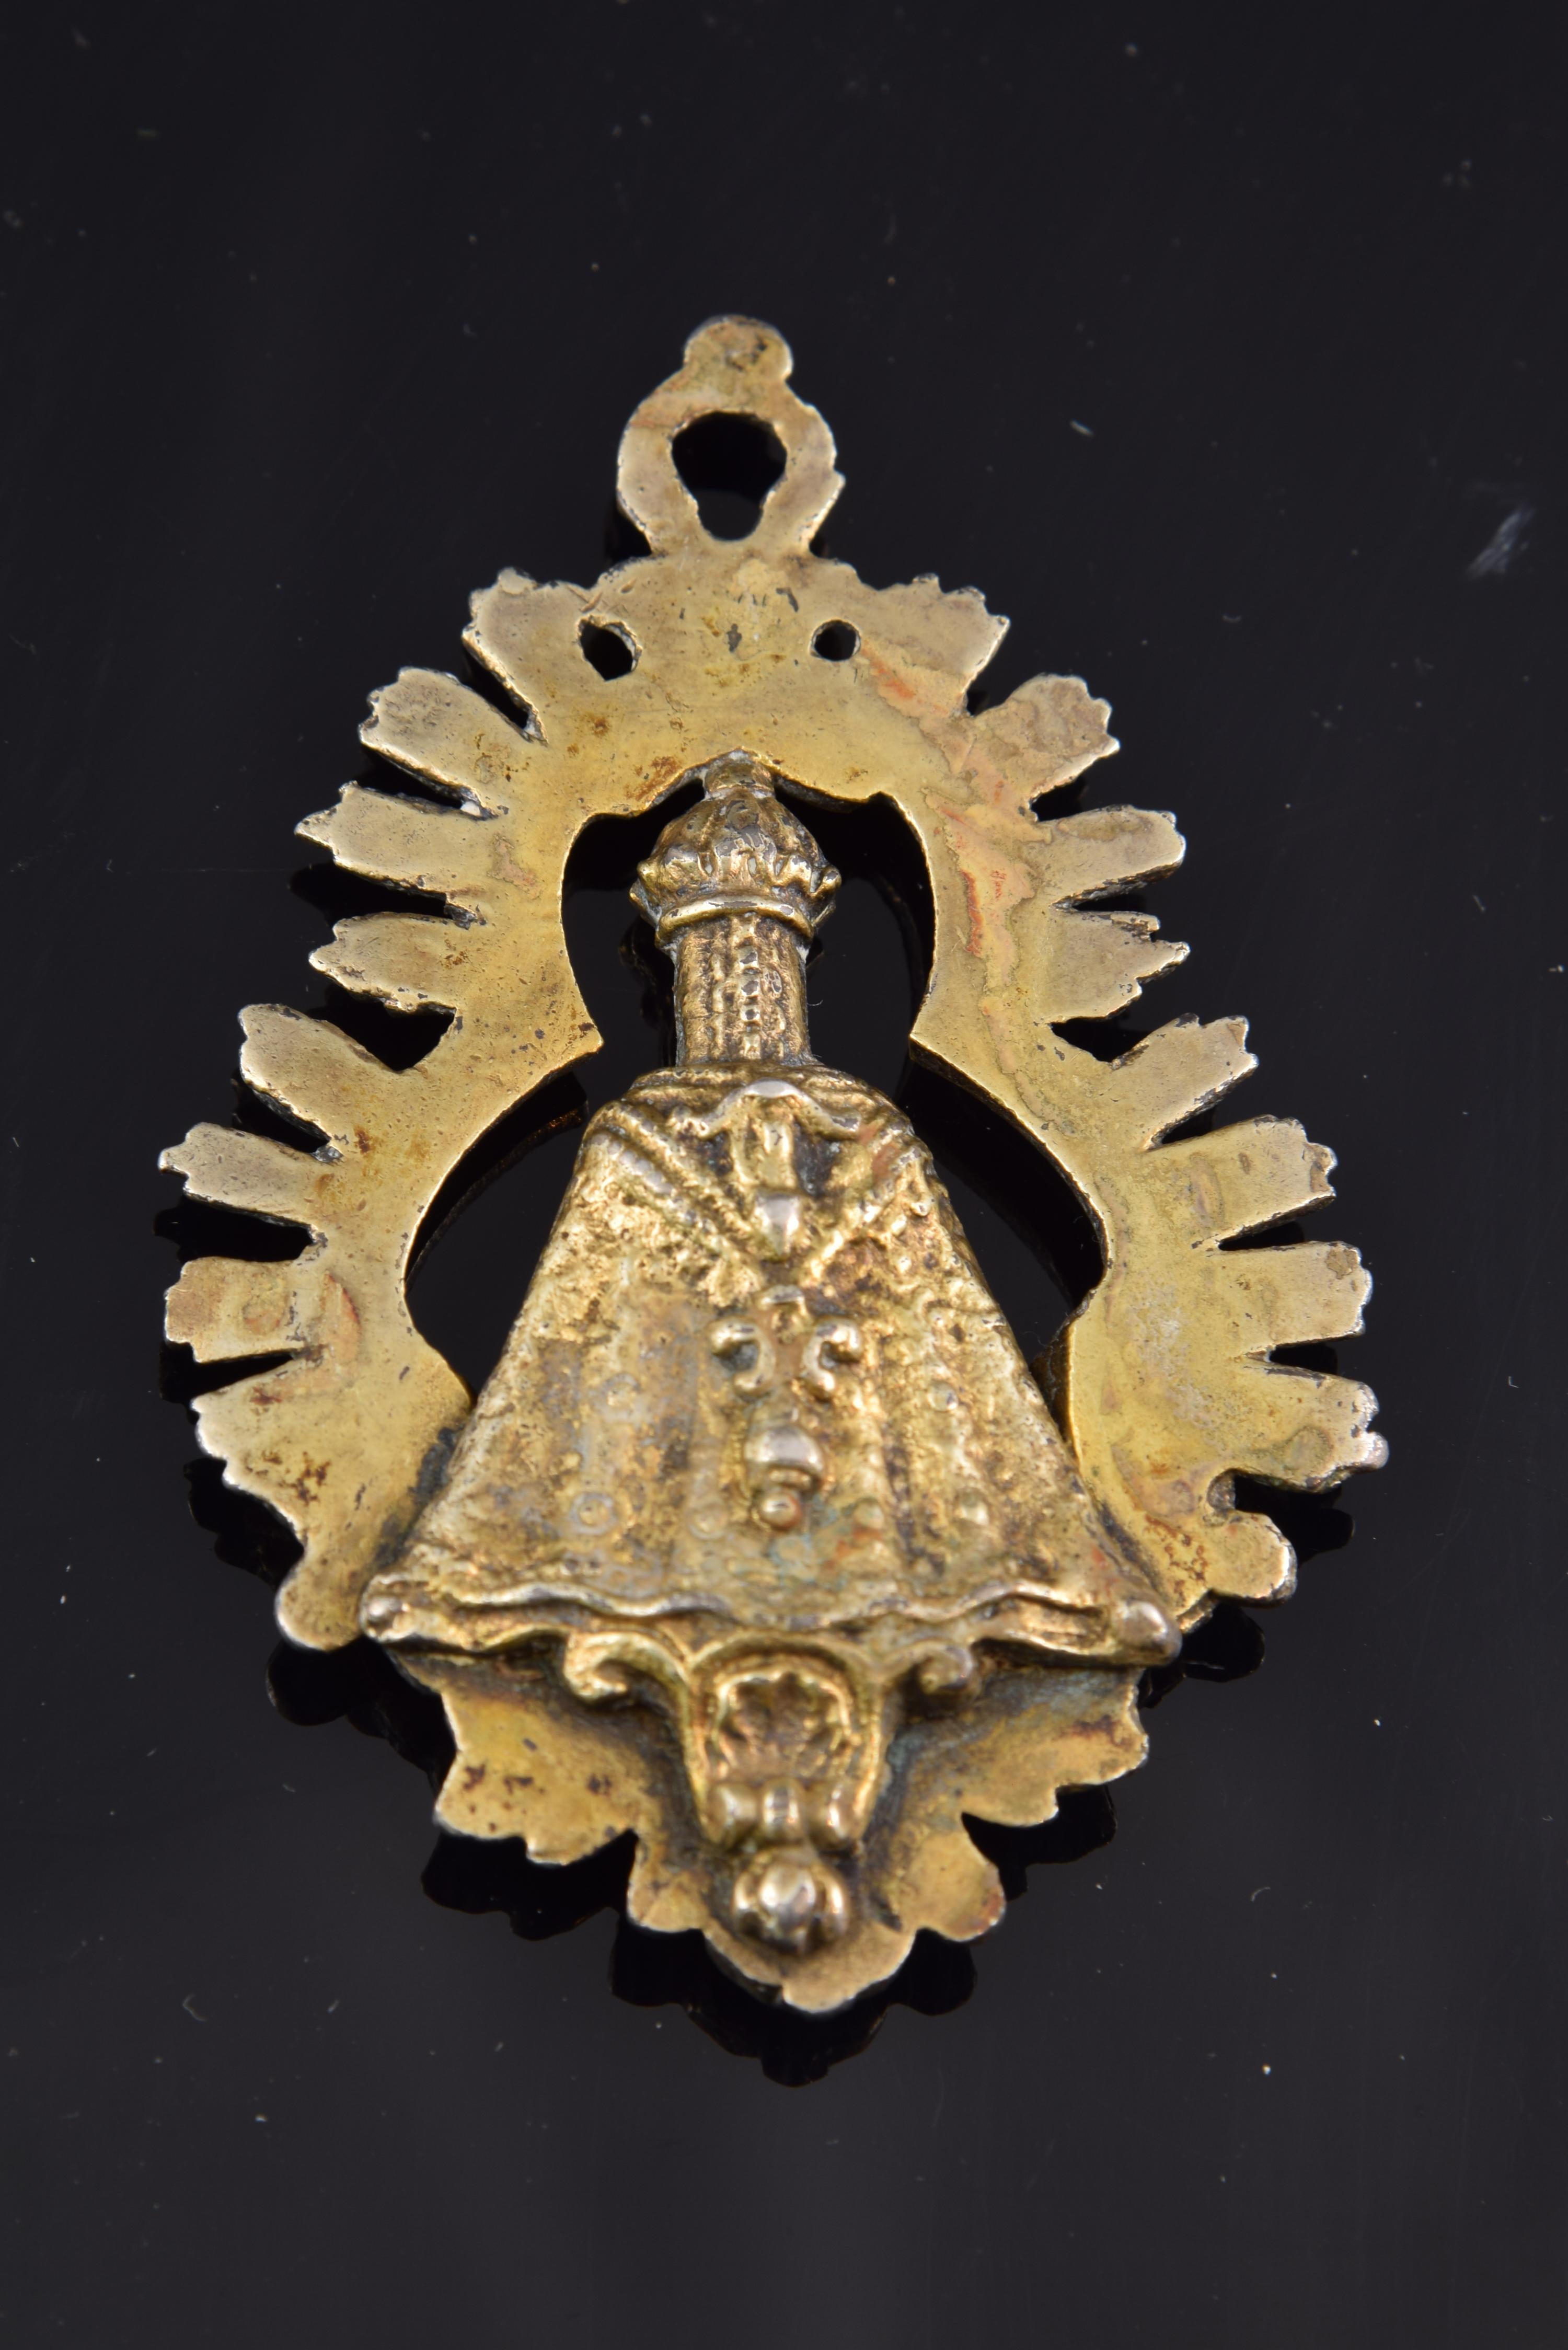 Medaille. Spanien, 18. Jahrhundert.
 Andachtsmedaille aus vergoldetem Metall, die ein Bild der Jungfrau Maria zeigt, das auf einem Sockel steht und von einem strahlenden dreilappigen Heiligenschein umgeben ist. Im unteren Bereich sind Köpfe von